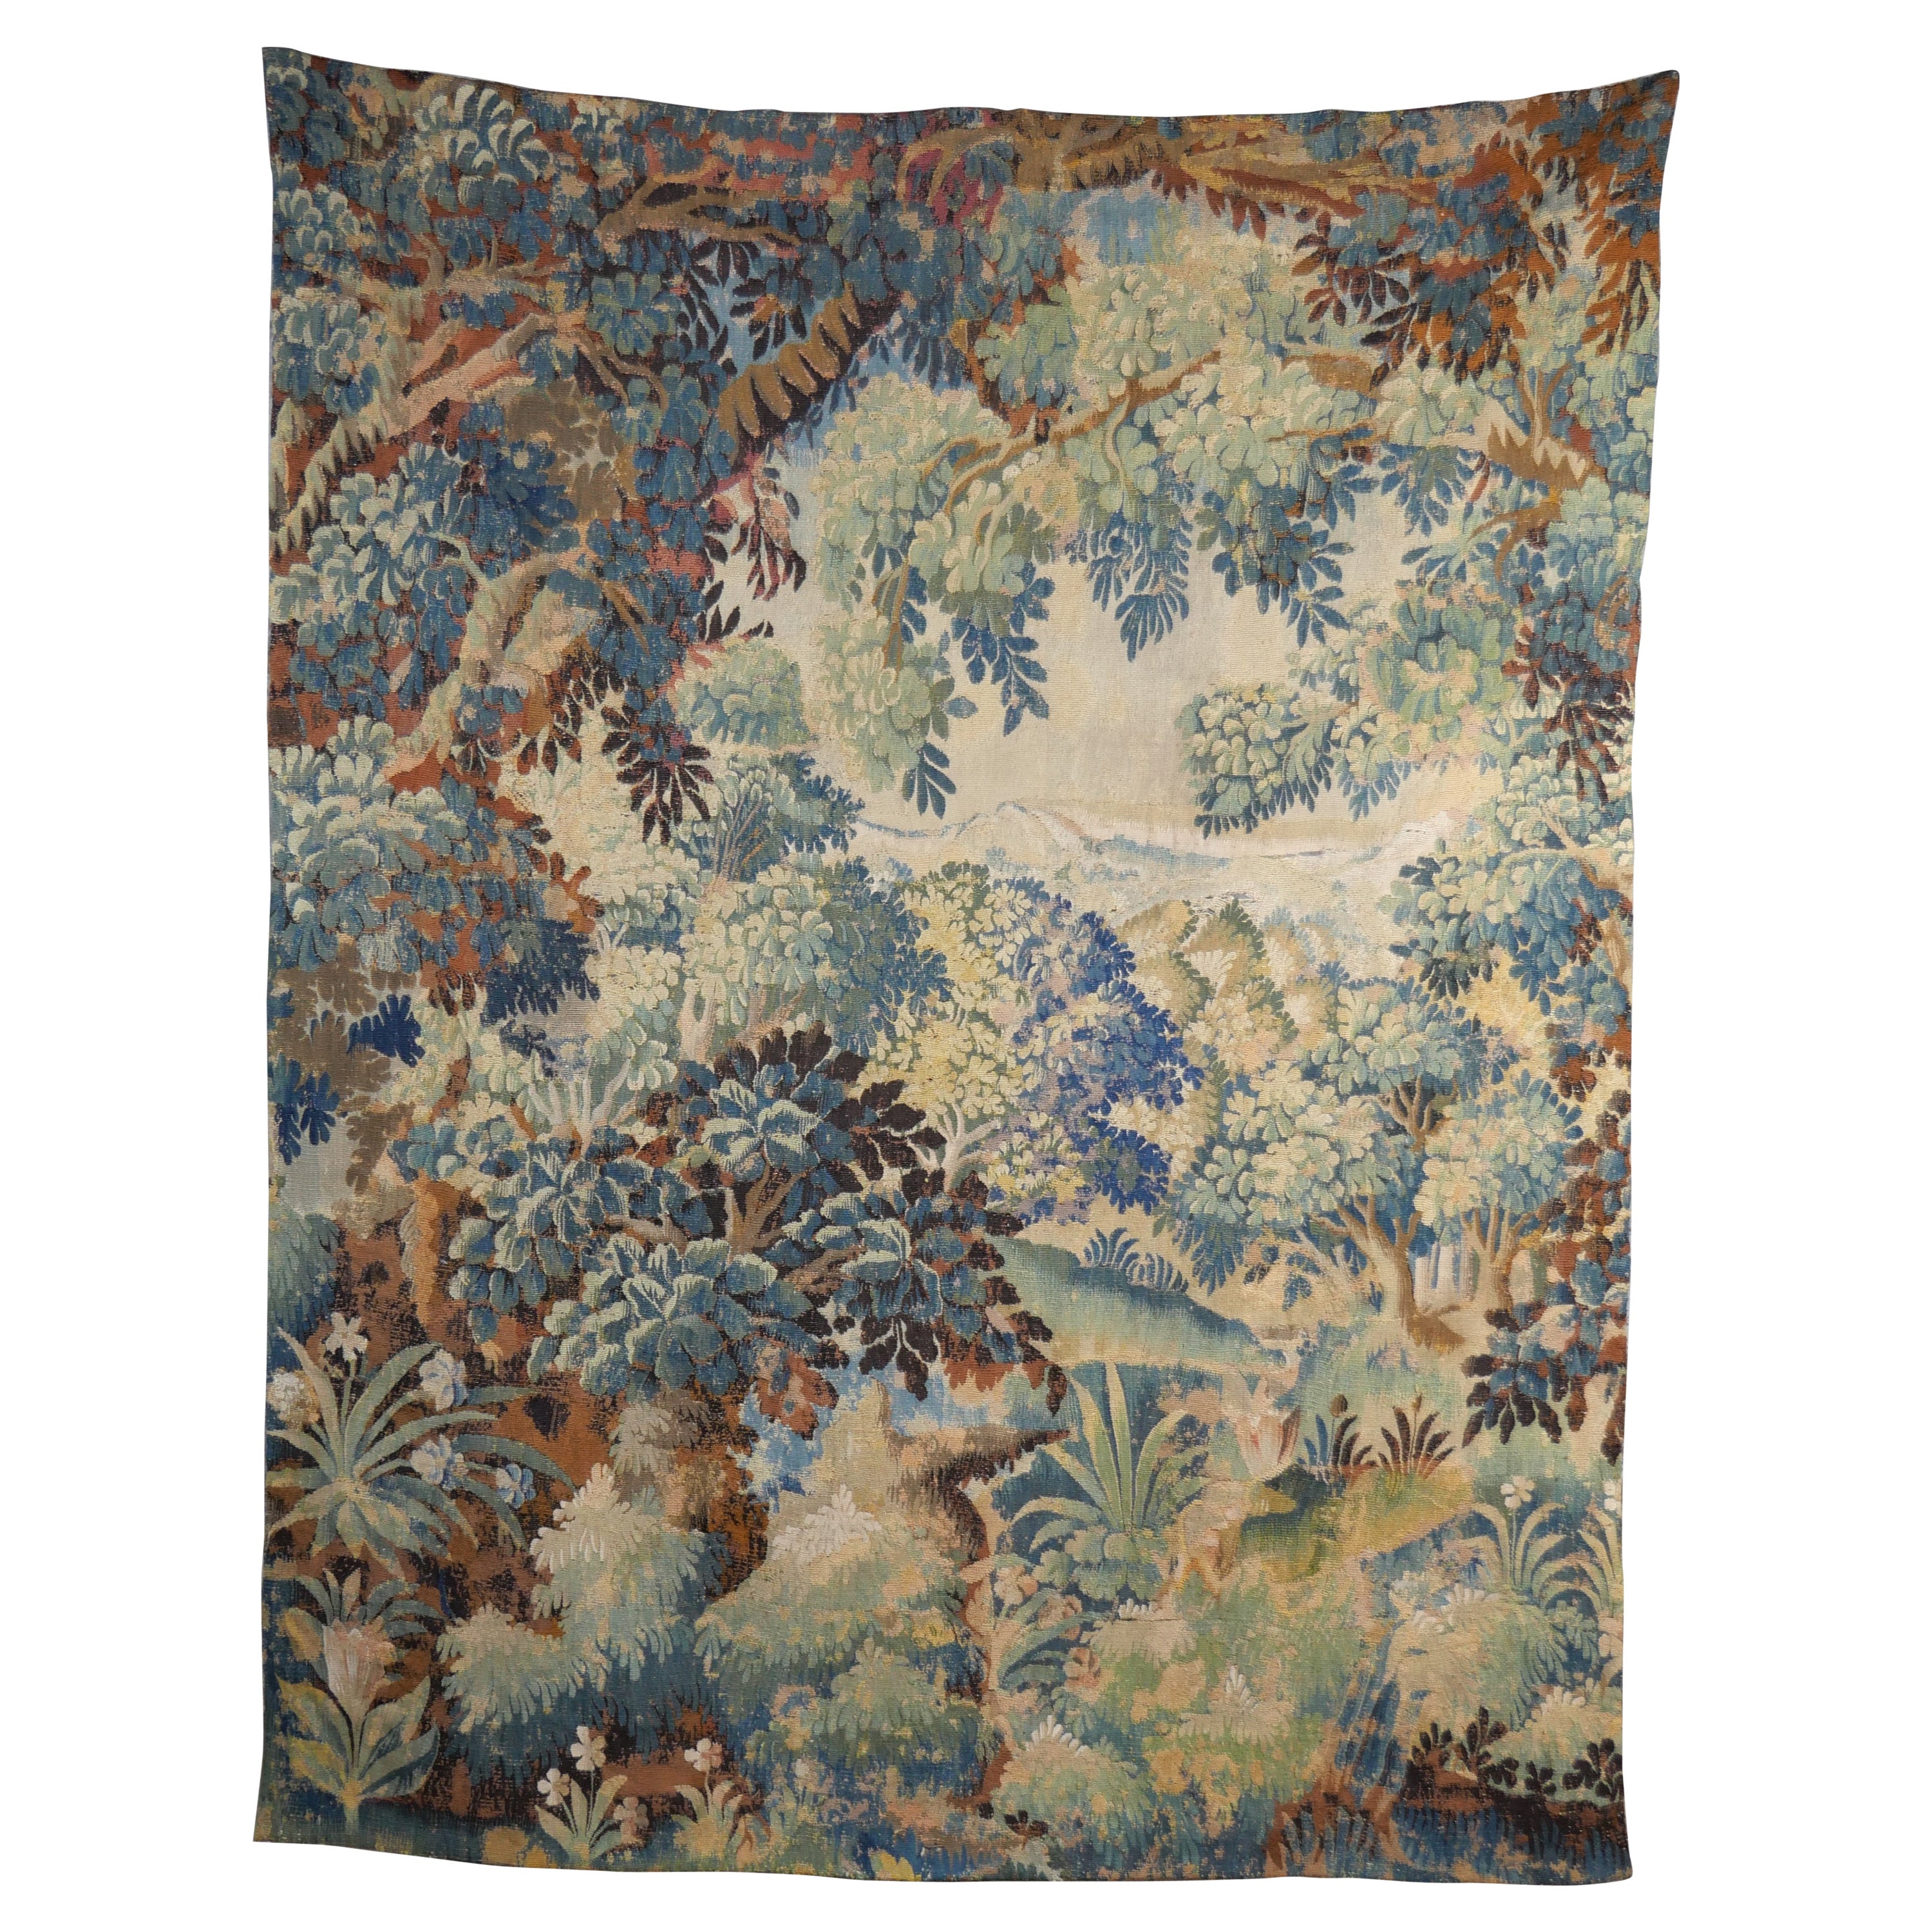 1780's Aubusson Verdure Tapestry